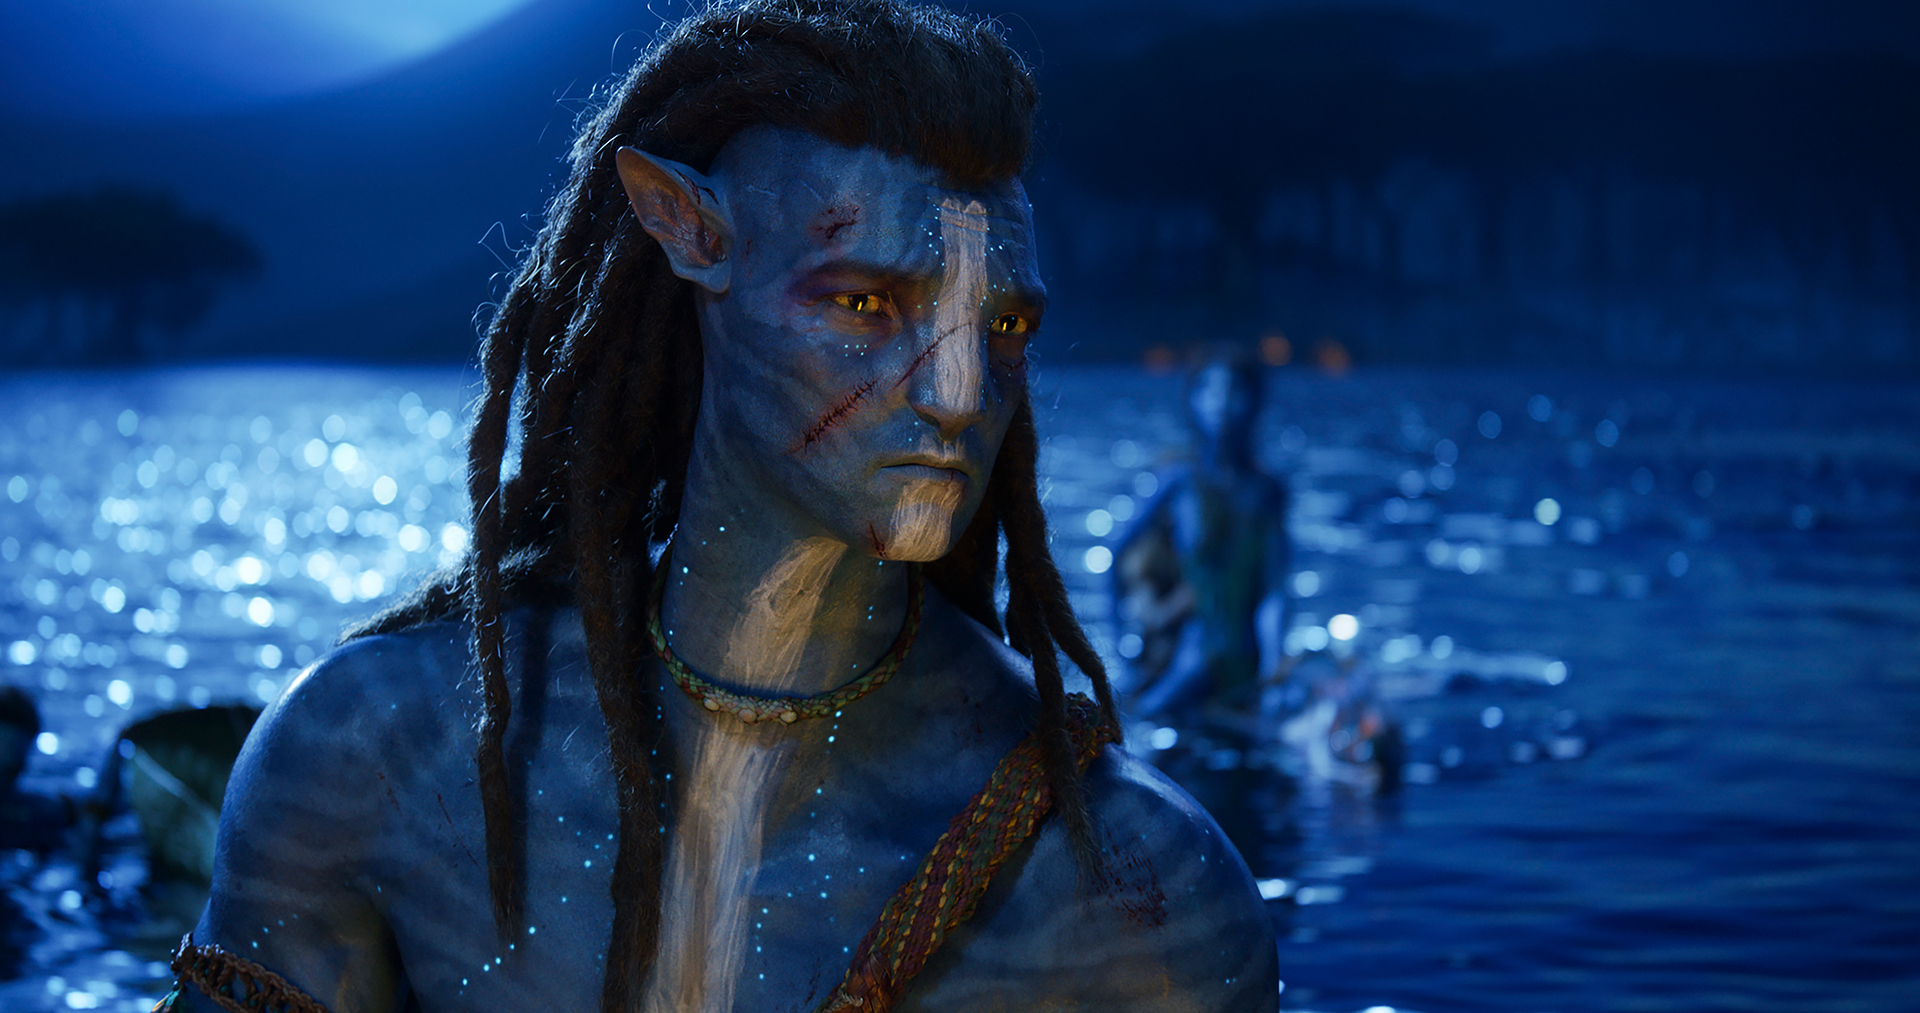 Trailer Avatar the way of water đã chính thức ra mắt với những cảnh quay đẹp mê hồn, mang đến cho khán giả một câu chuyện hoàn toàn mới về Pandora và cuộc chiến bảo vệ môi trường. Đã đến lúc cùng theo dõi trailer và đắm mình trong thế giới ảo đầy màu sắc này.